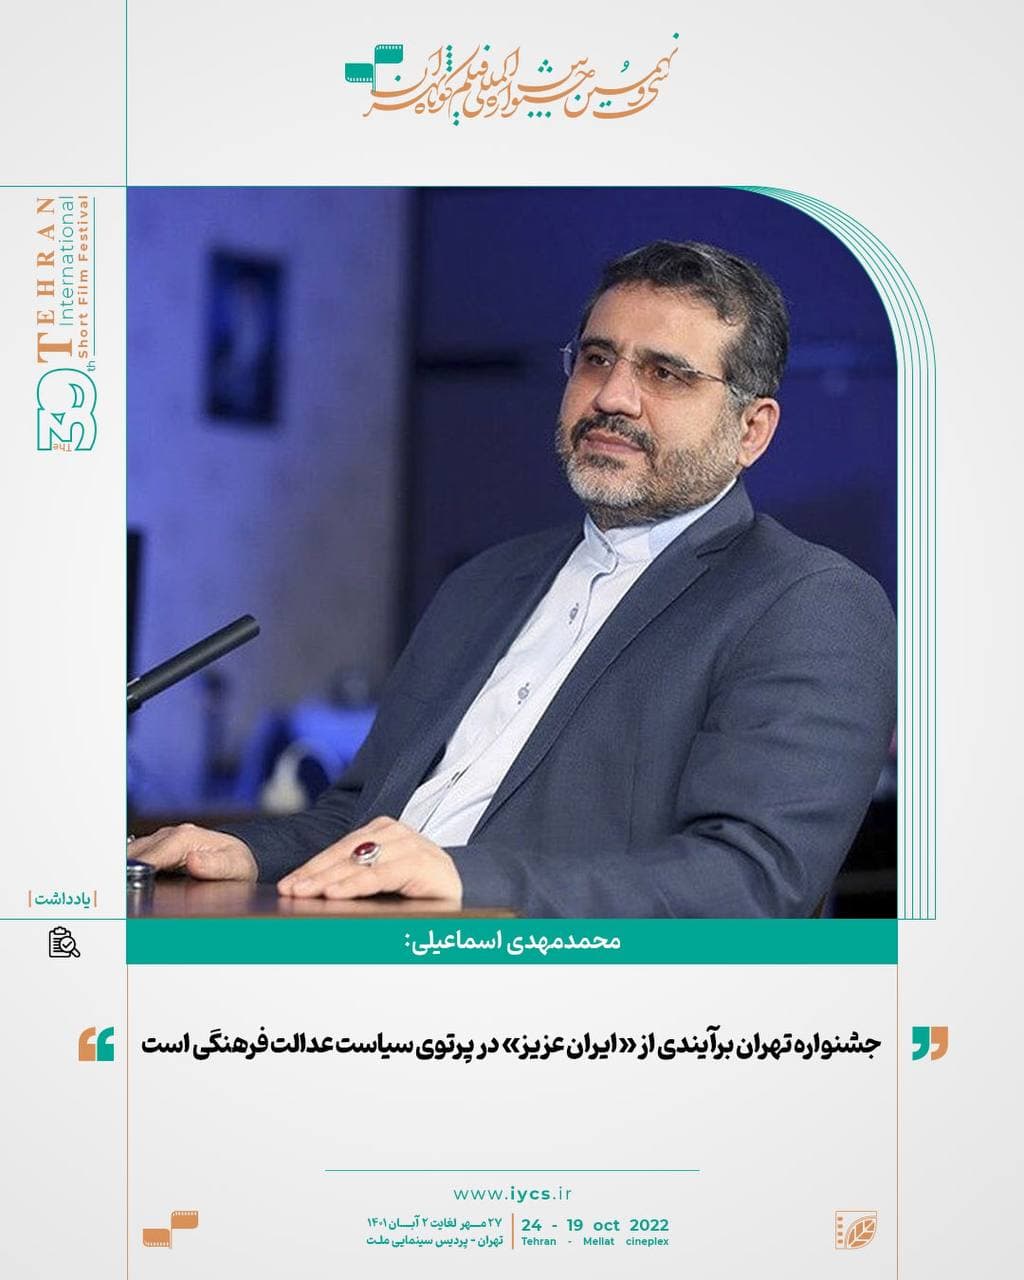 اسماعیلی: جشنواره تهران برآیندی از «ایران عزیز» در پرتوی سیاست عدالت فرهنگی است